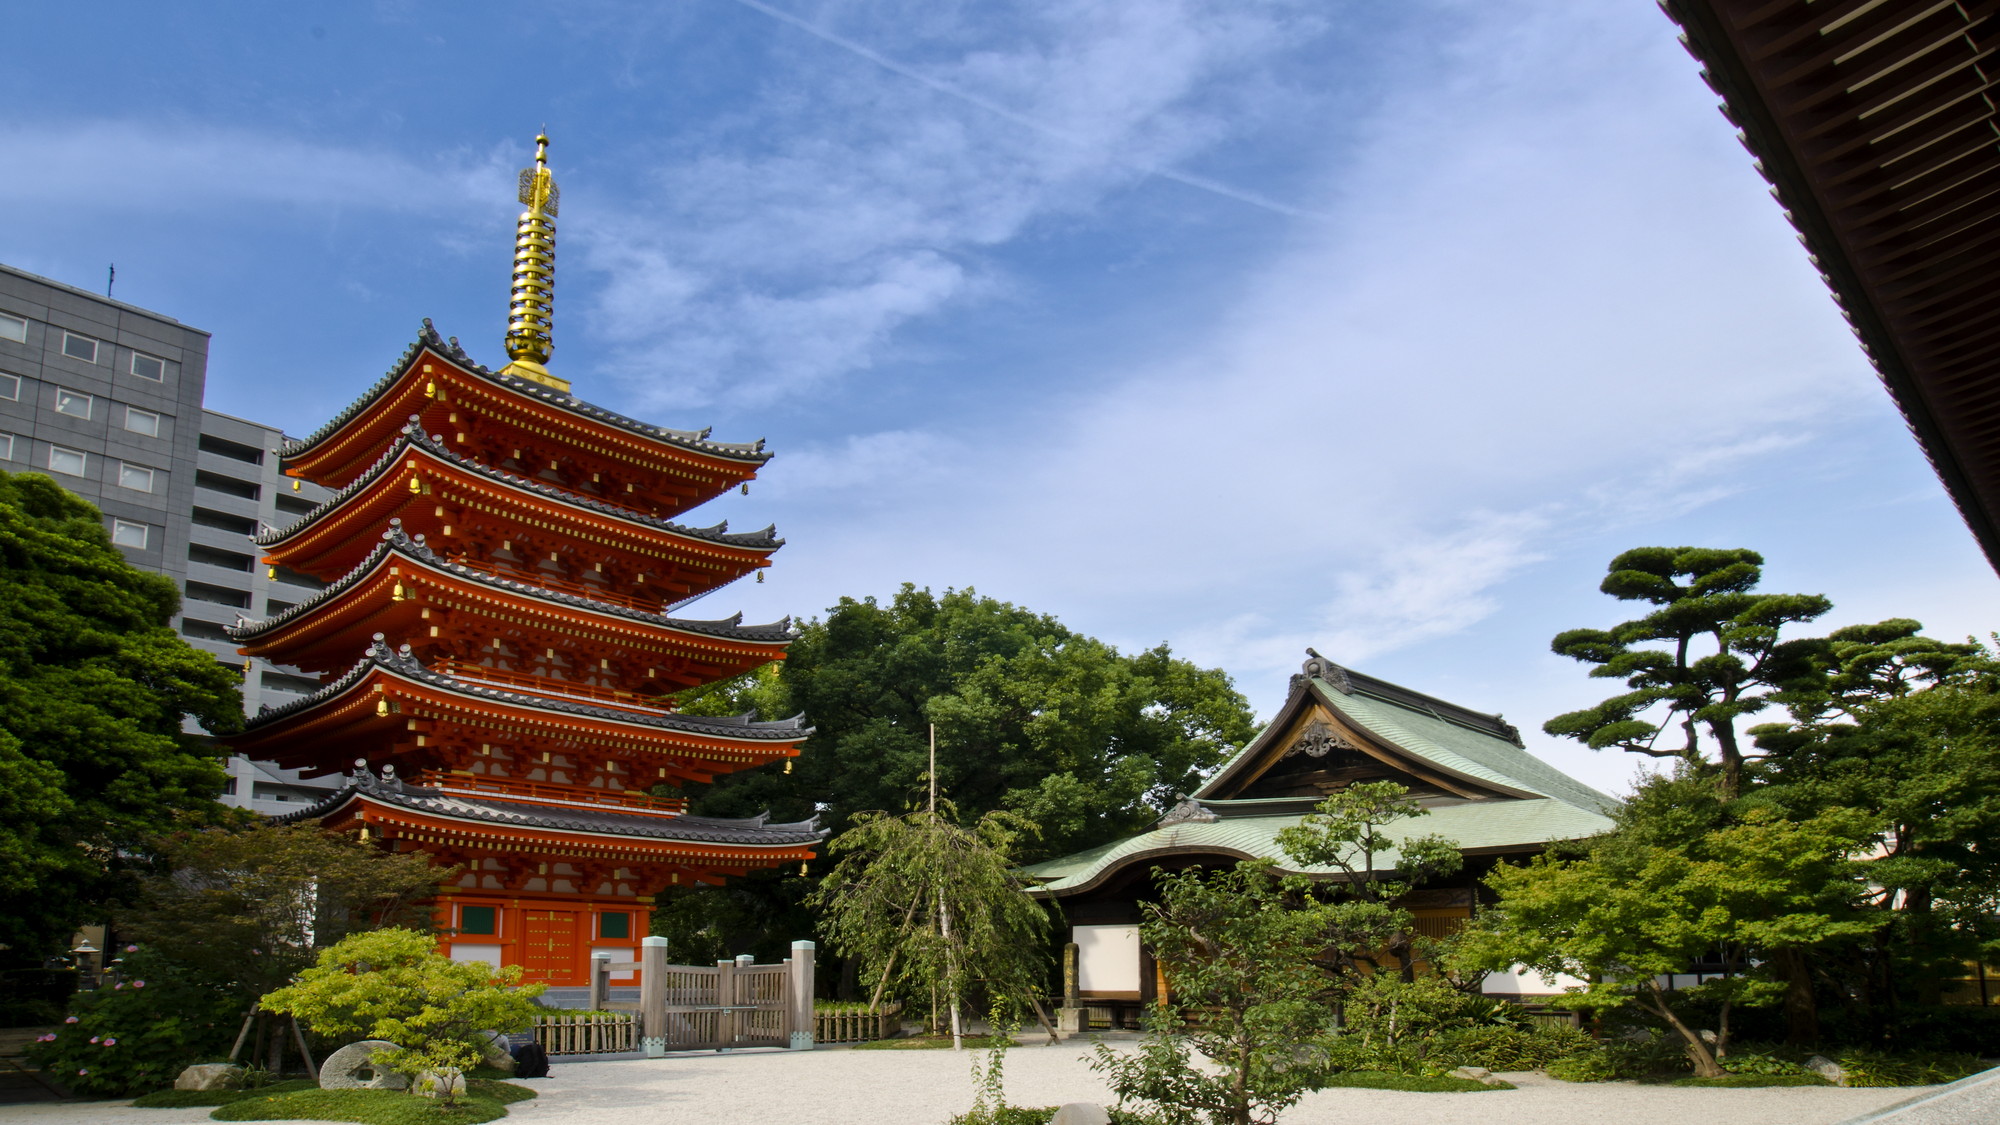 東長寺 ホテルより徒歩5分。博多を代表する寺社。博多大仏は必見です。